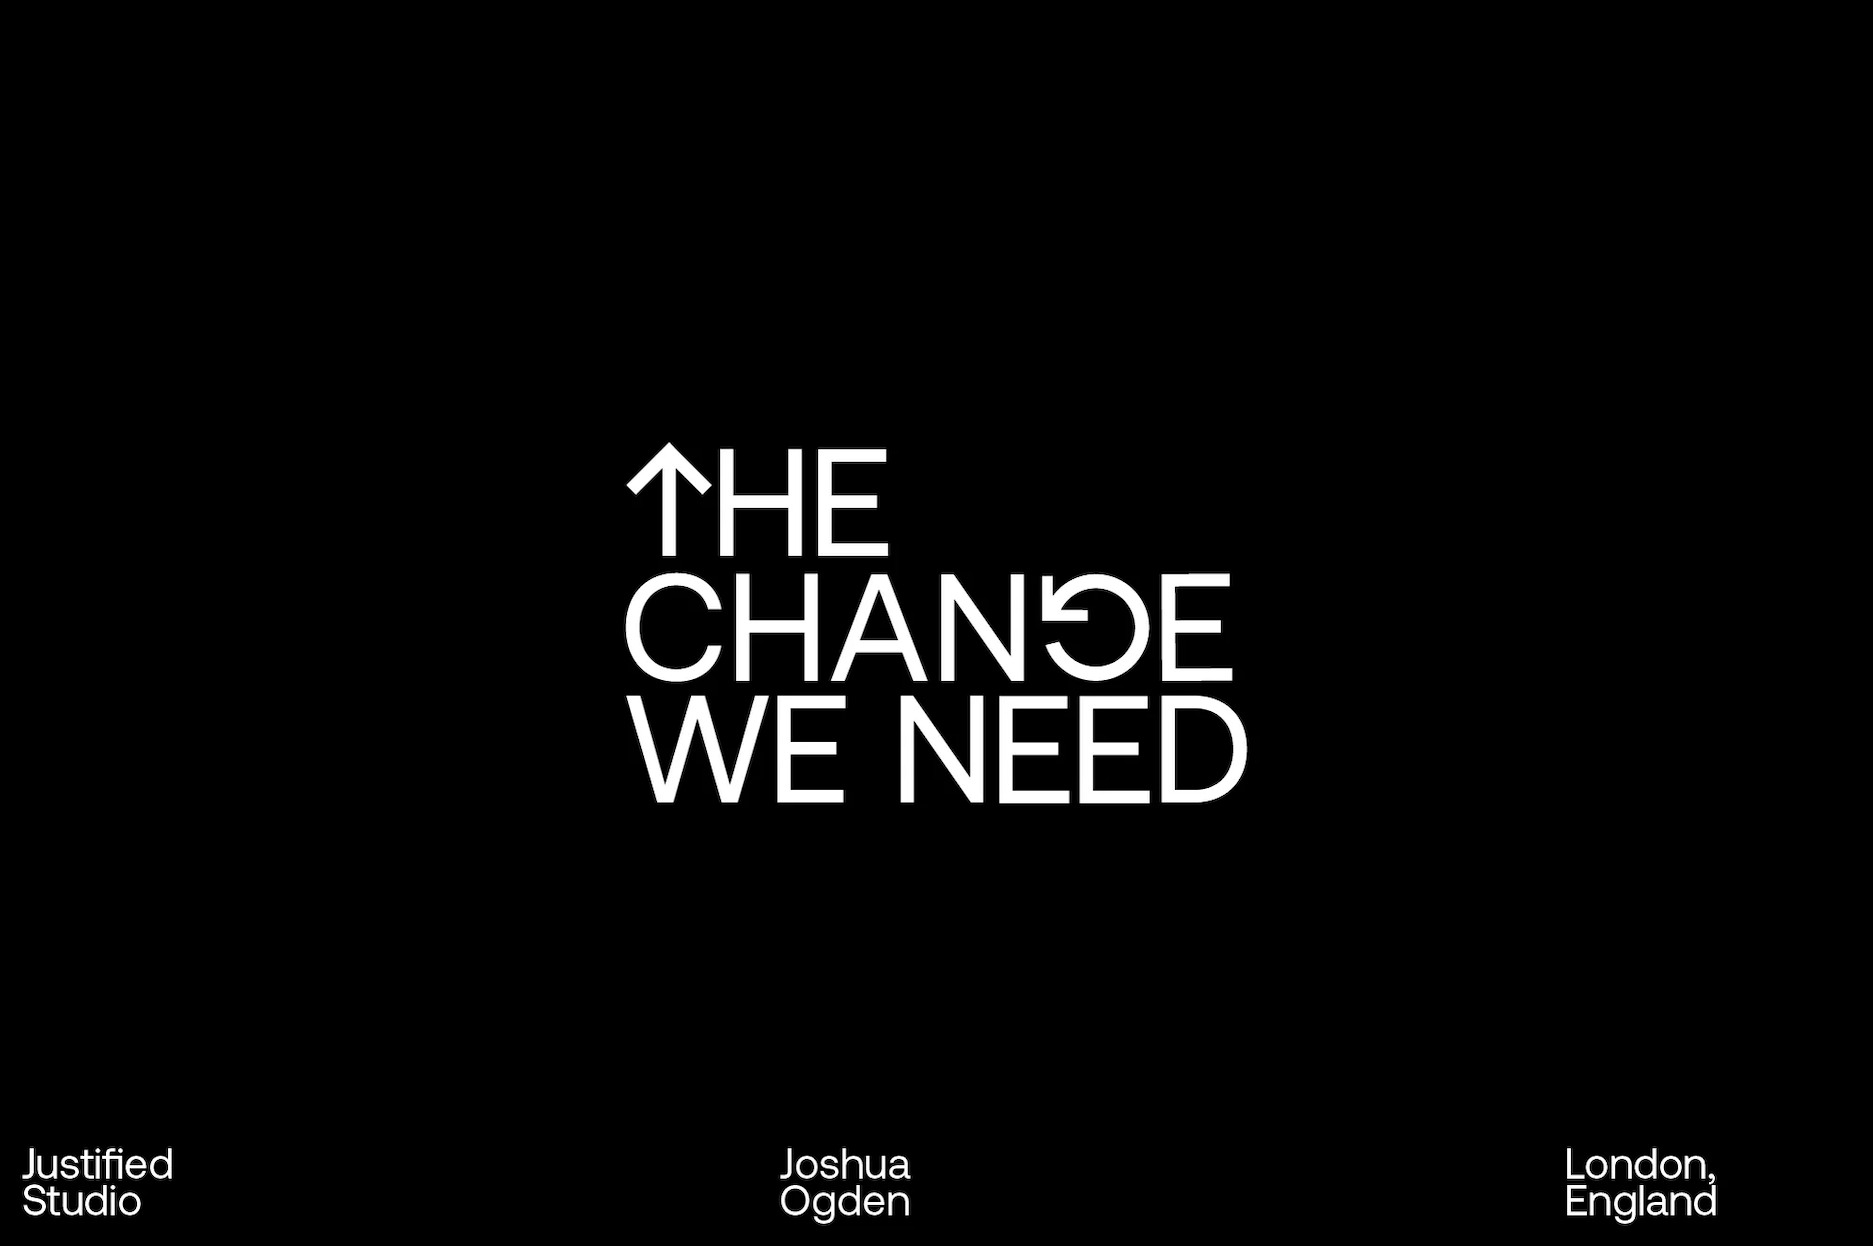 The Change We Need